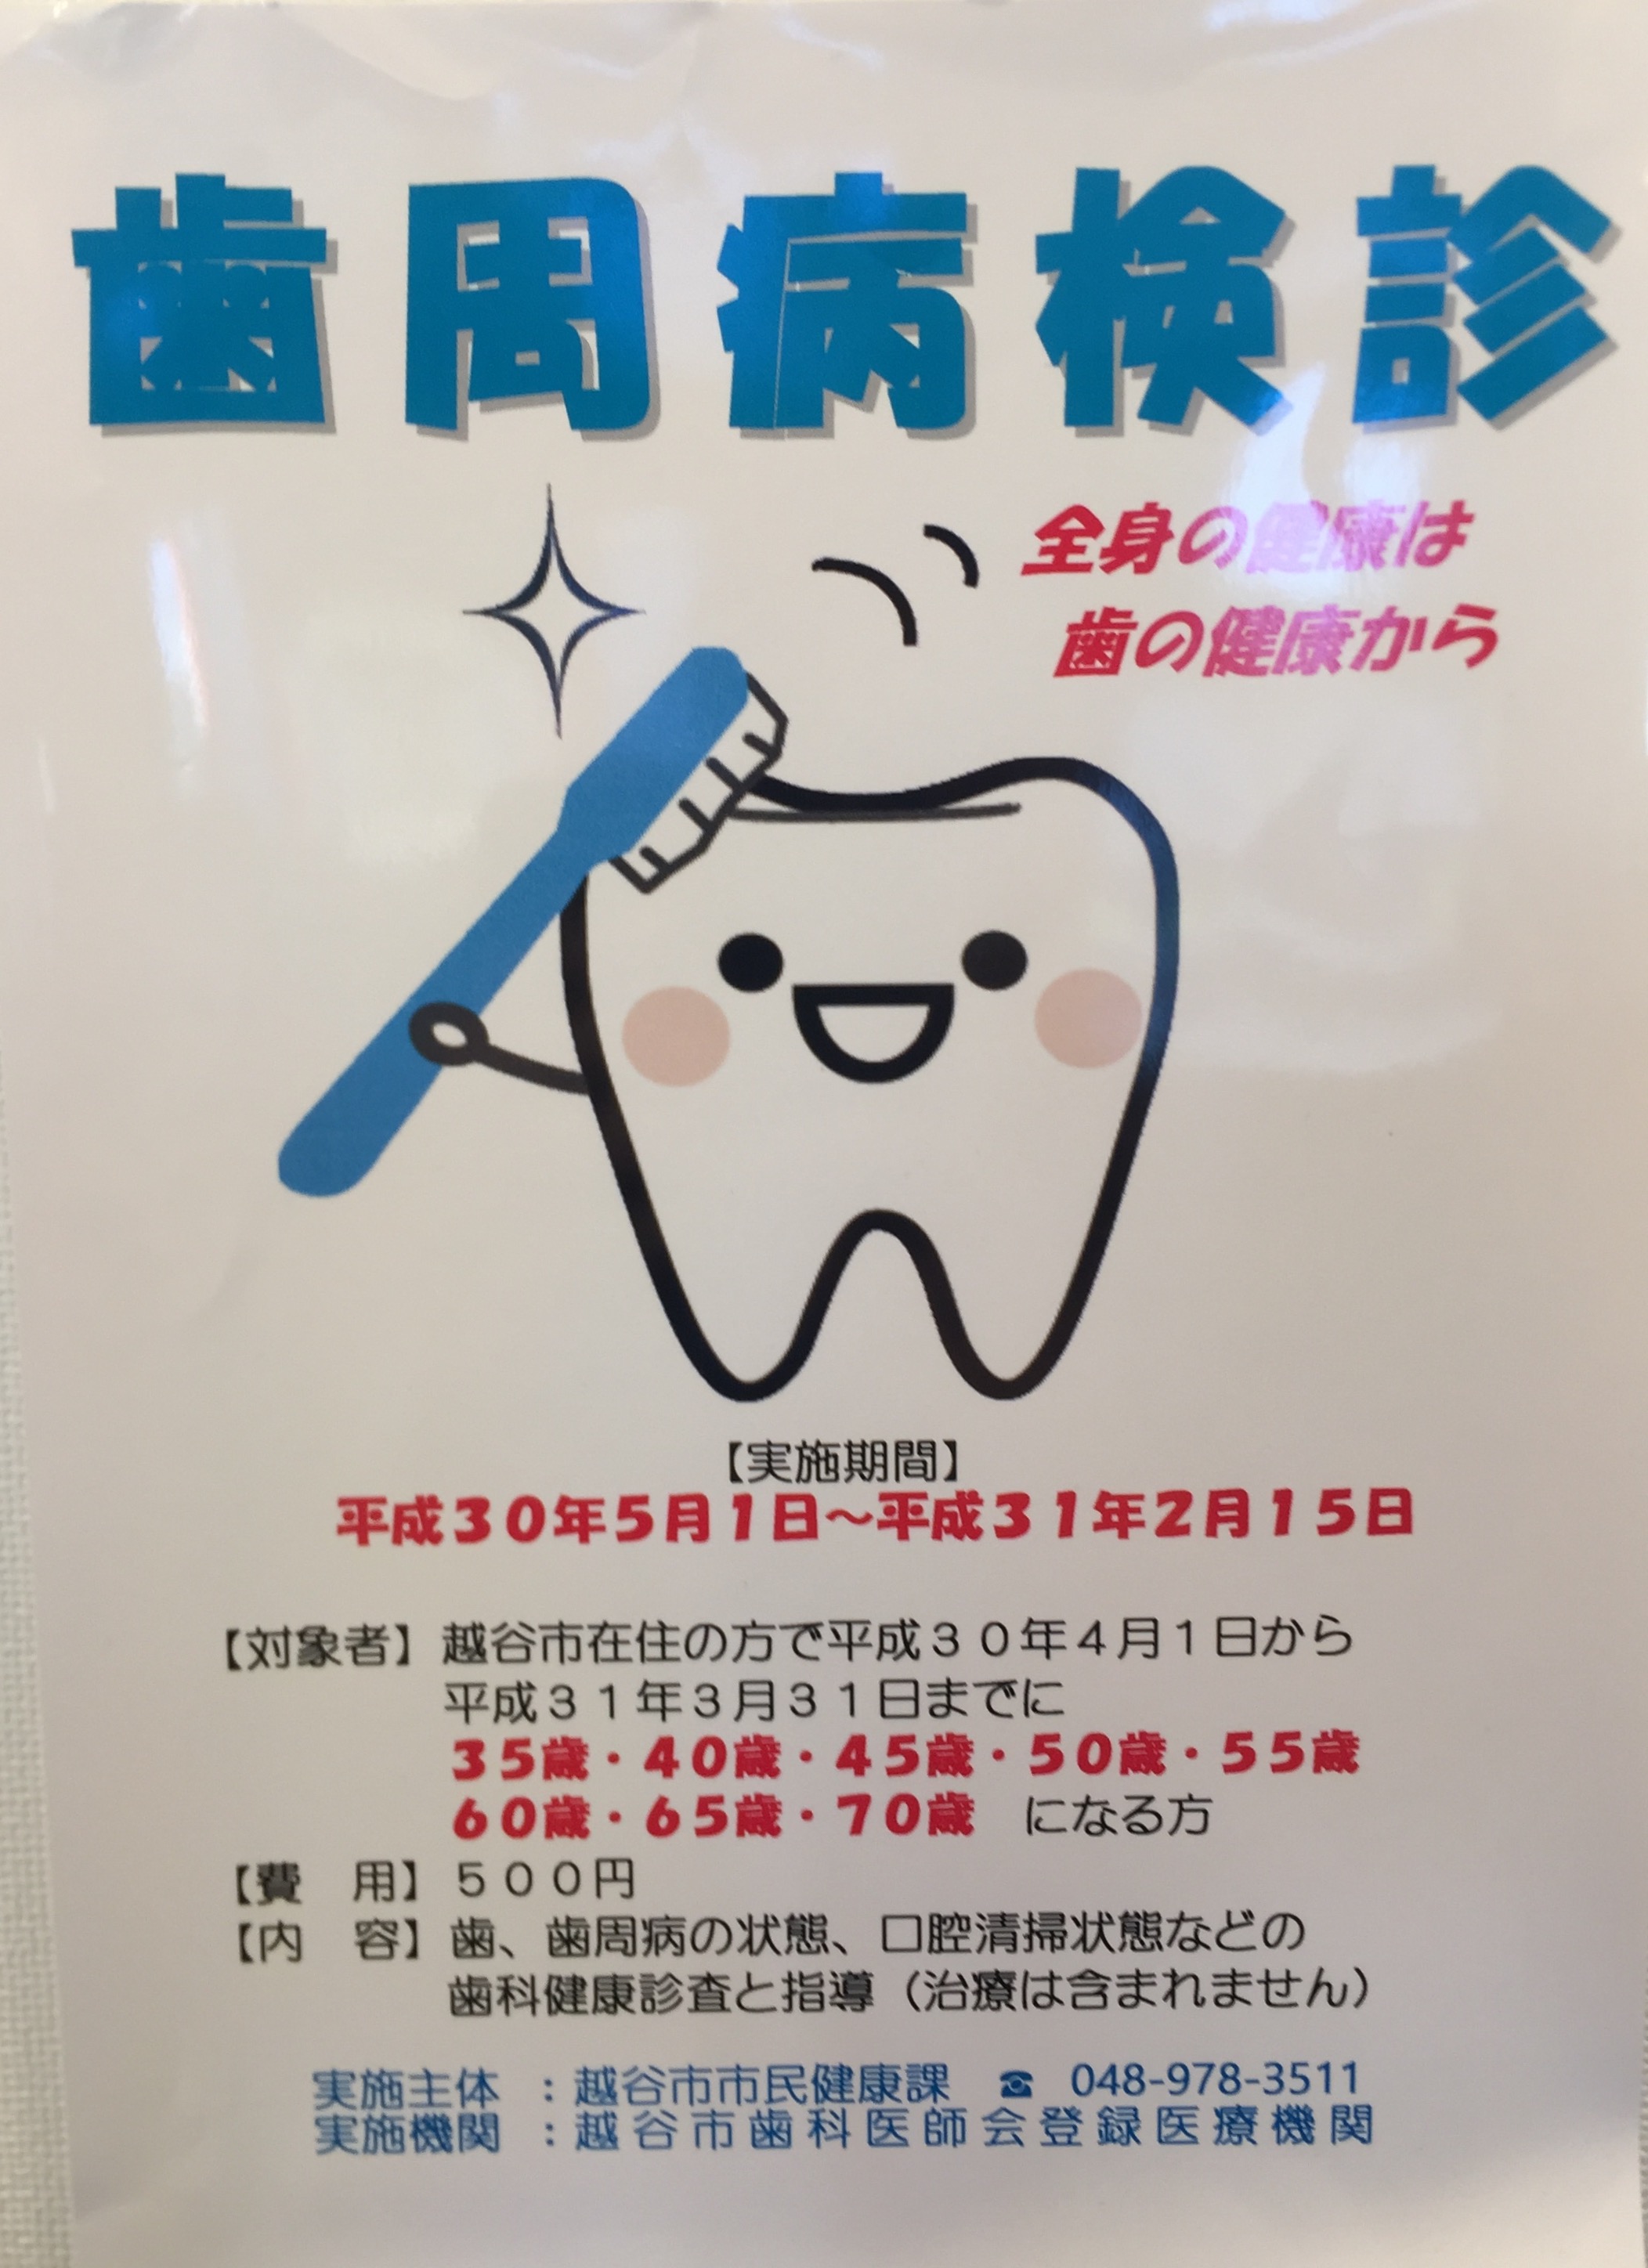 歯周病検診